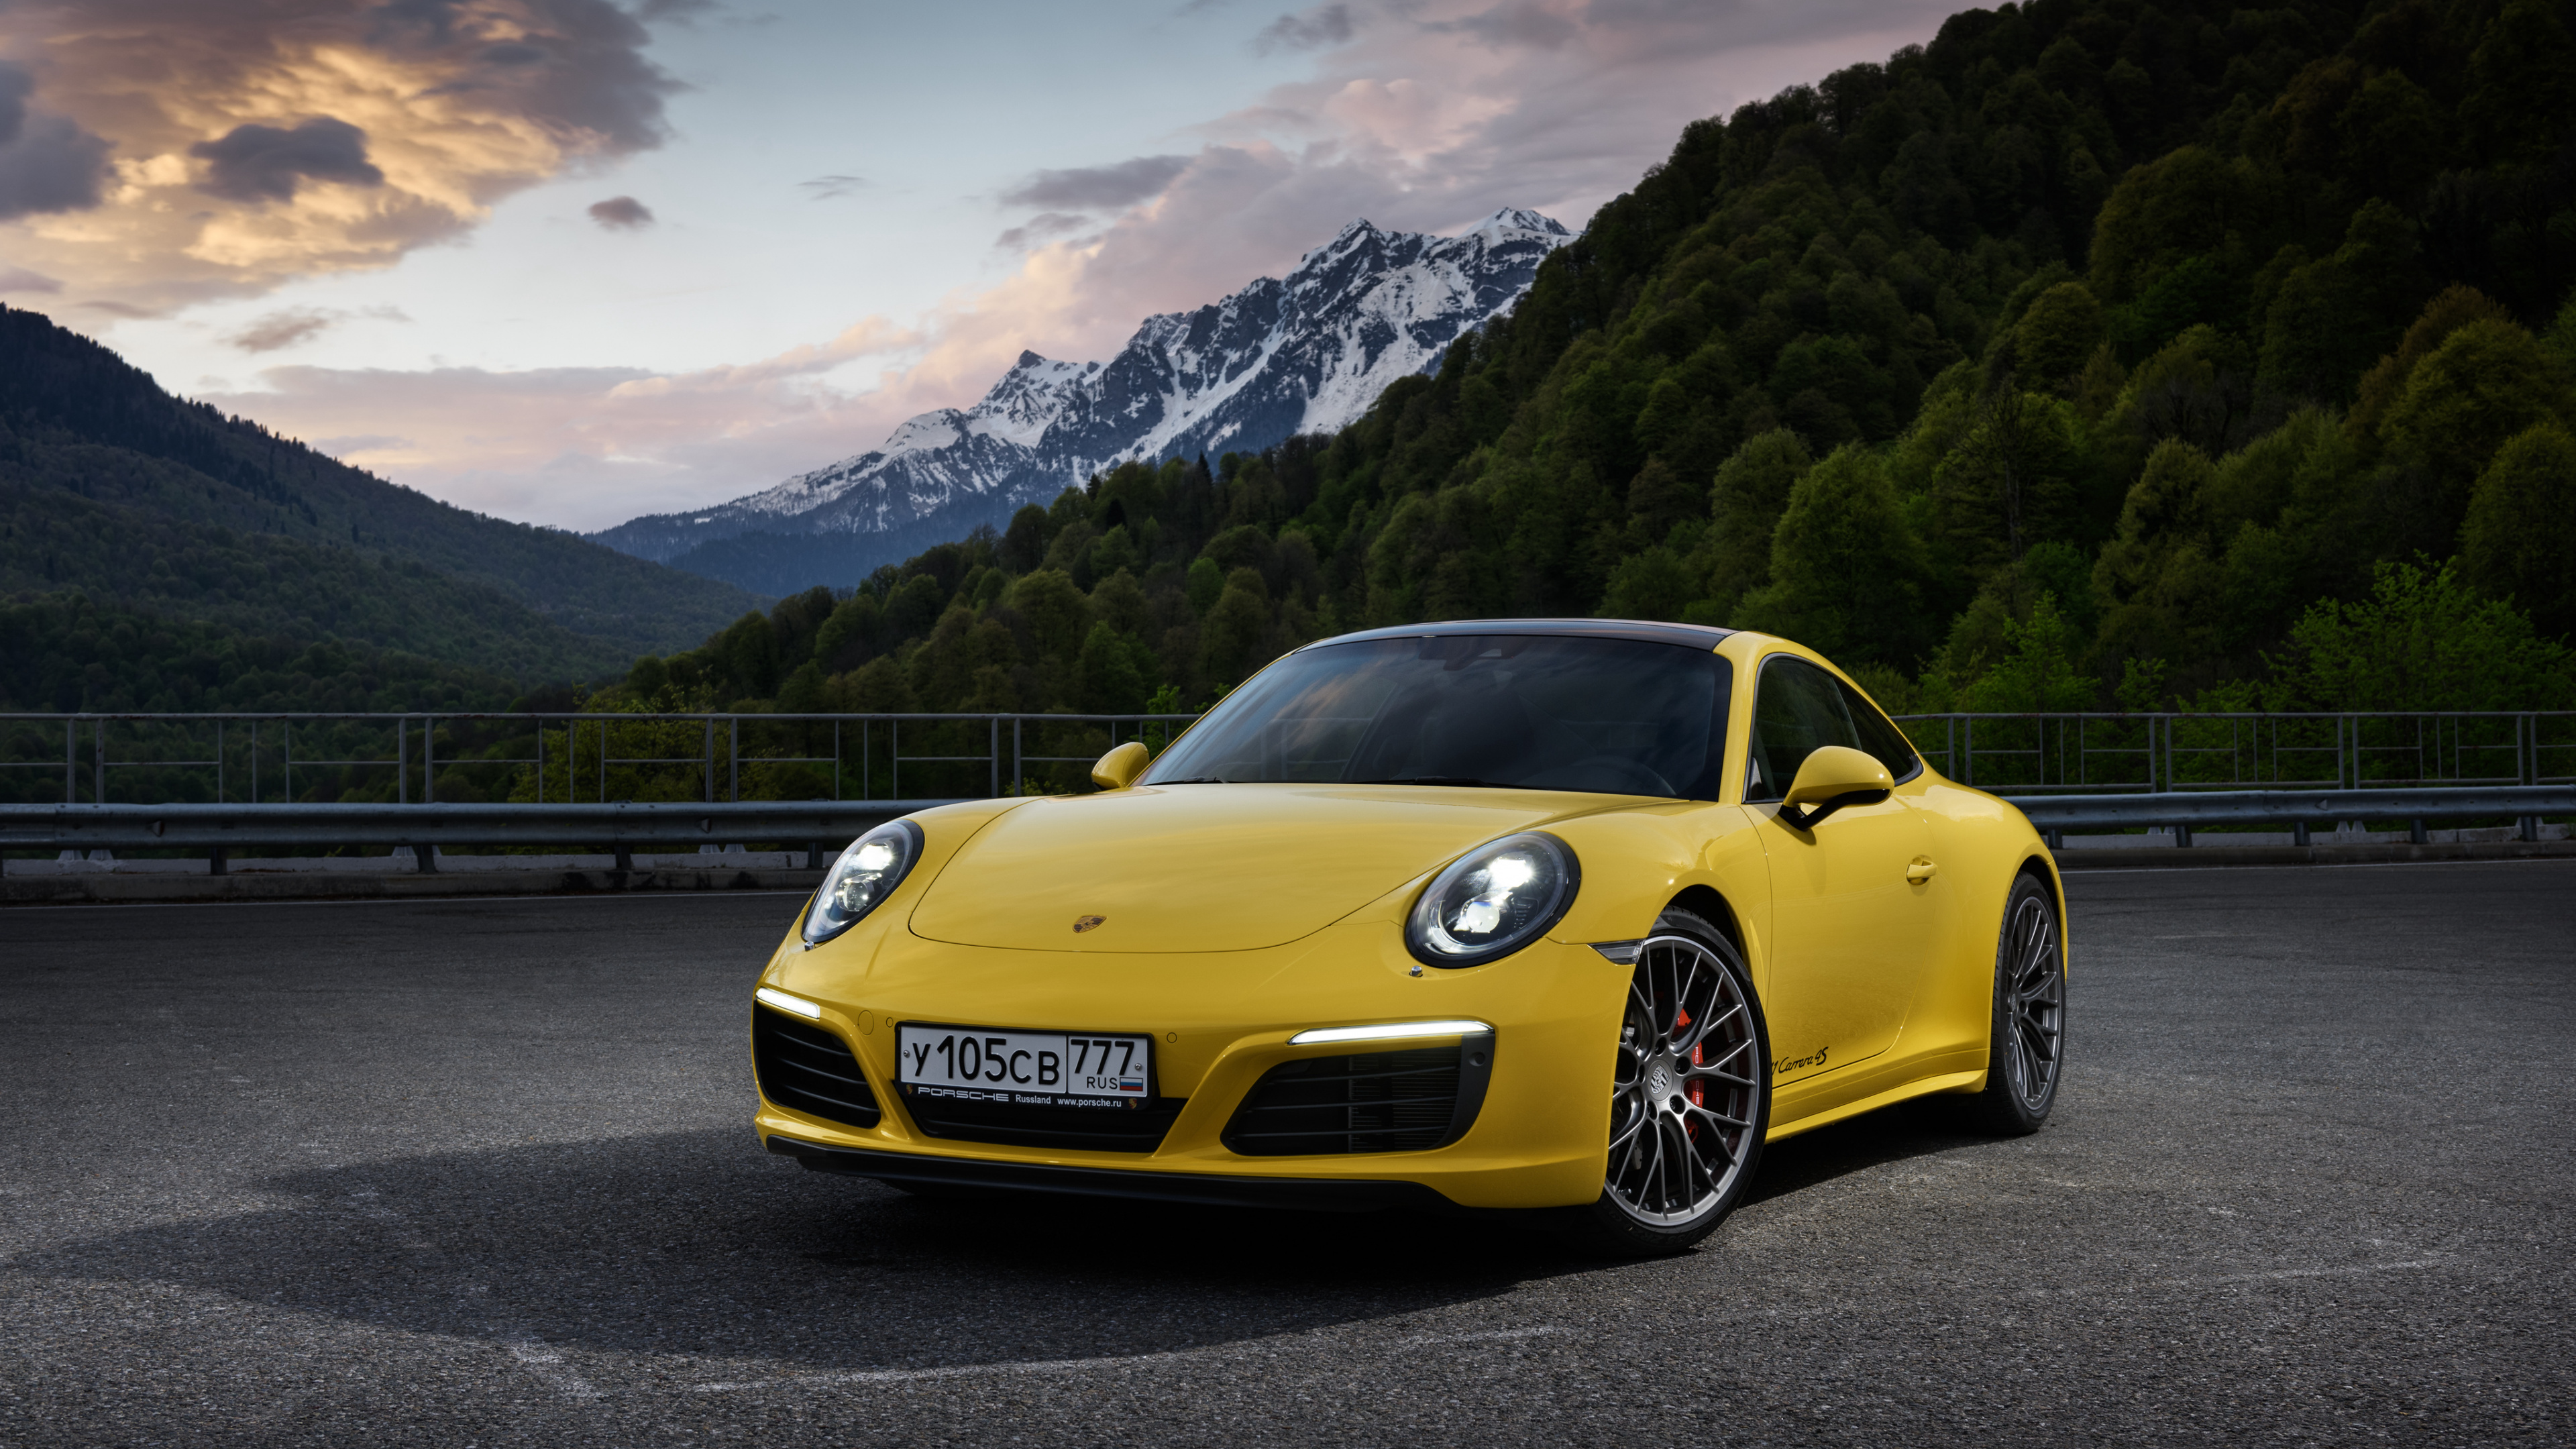 Porsche 911 Amarillo en la Carretera Cerca de la Montaña Durante el Día. Wallpaper in 3840x2160 Resolution